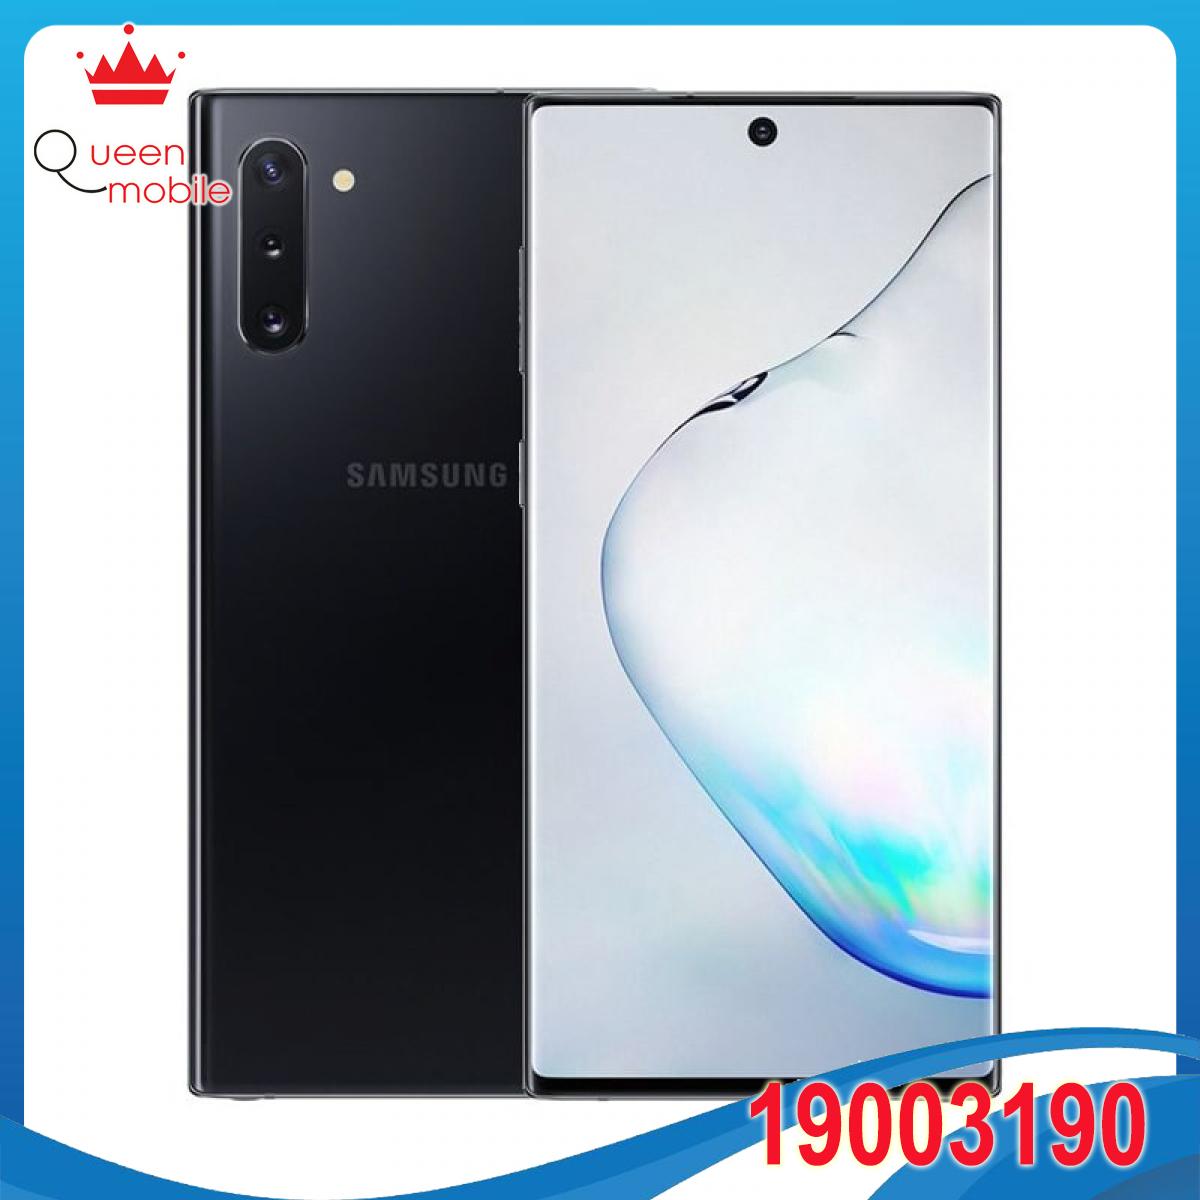 Điện Thoại Samsung Galaxy Note 10 (256GB/8GB) - Hàng Chính Hãng - Đã Kích Hoạt Bảo Hành Điện Tử - Hồng Ruby